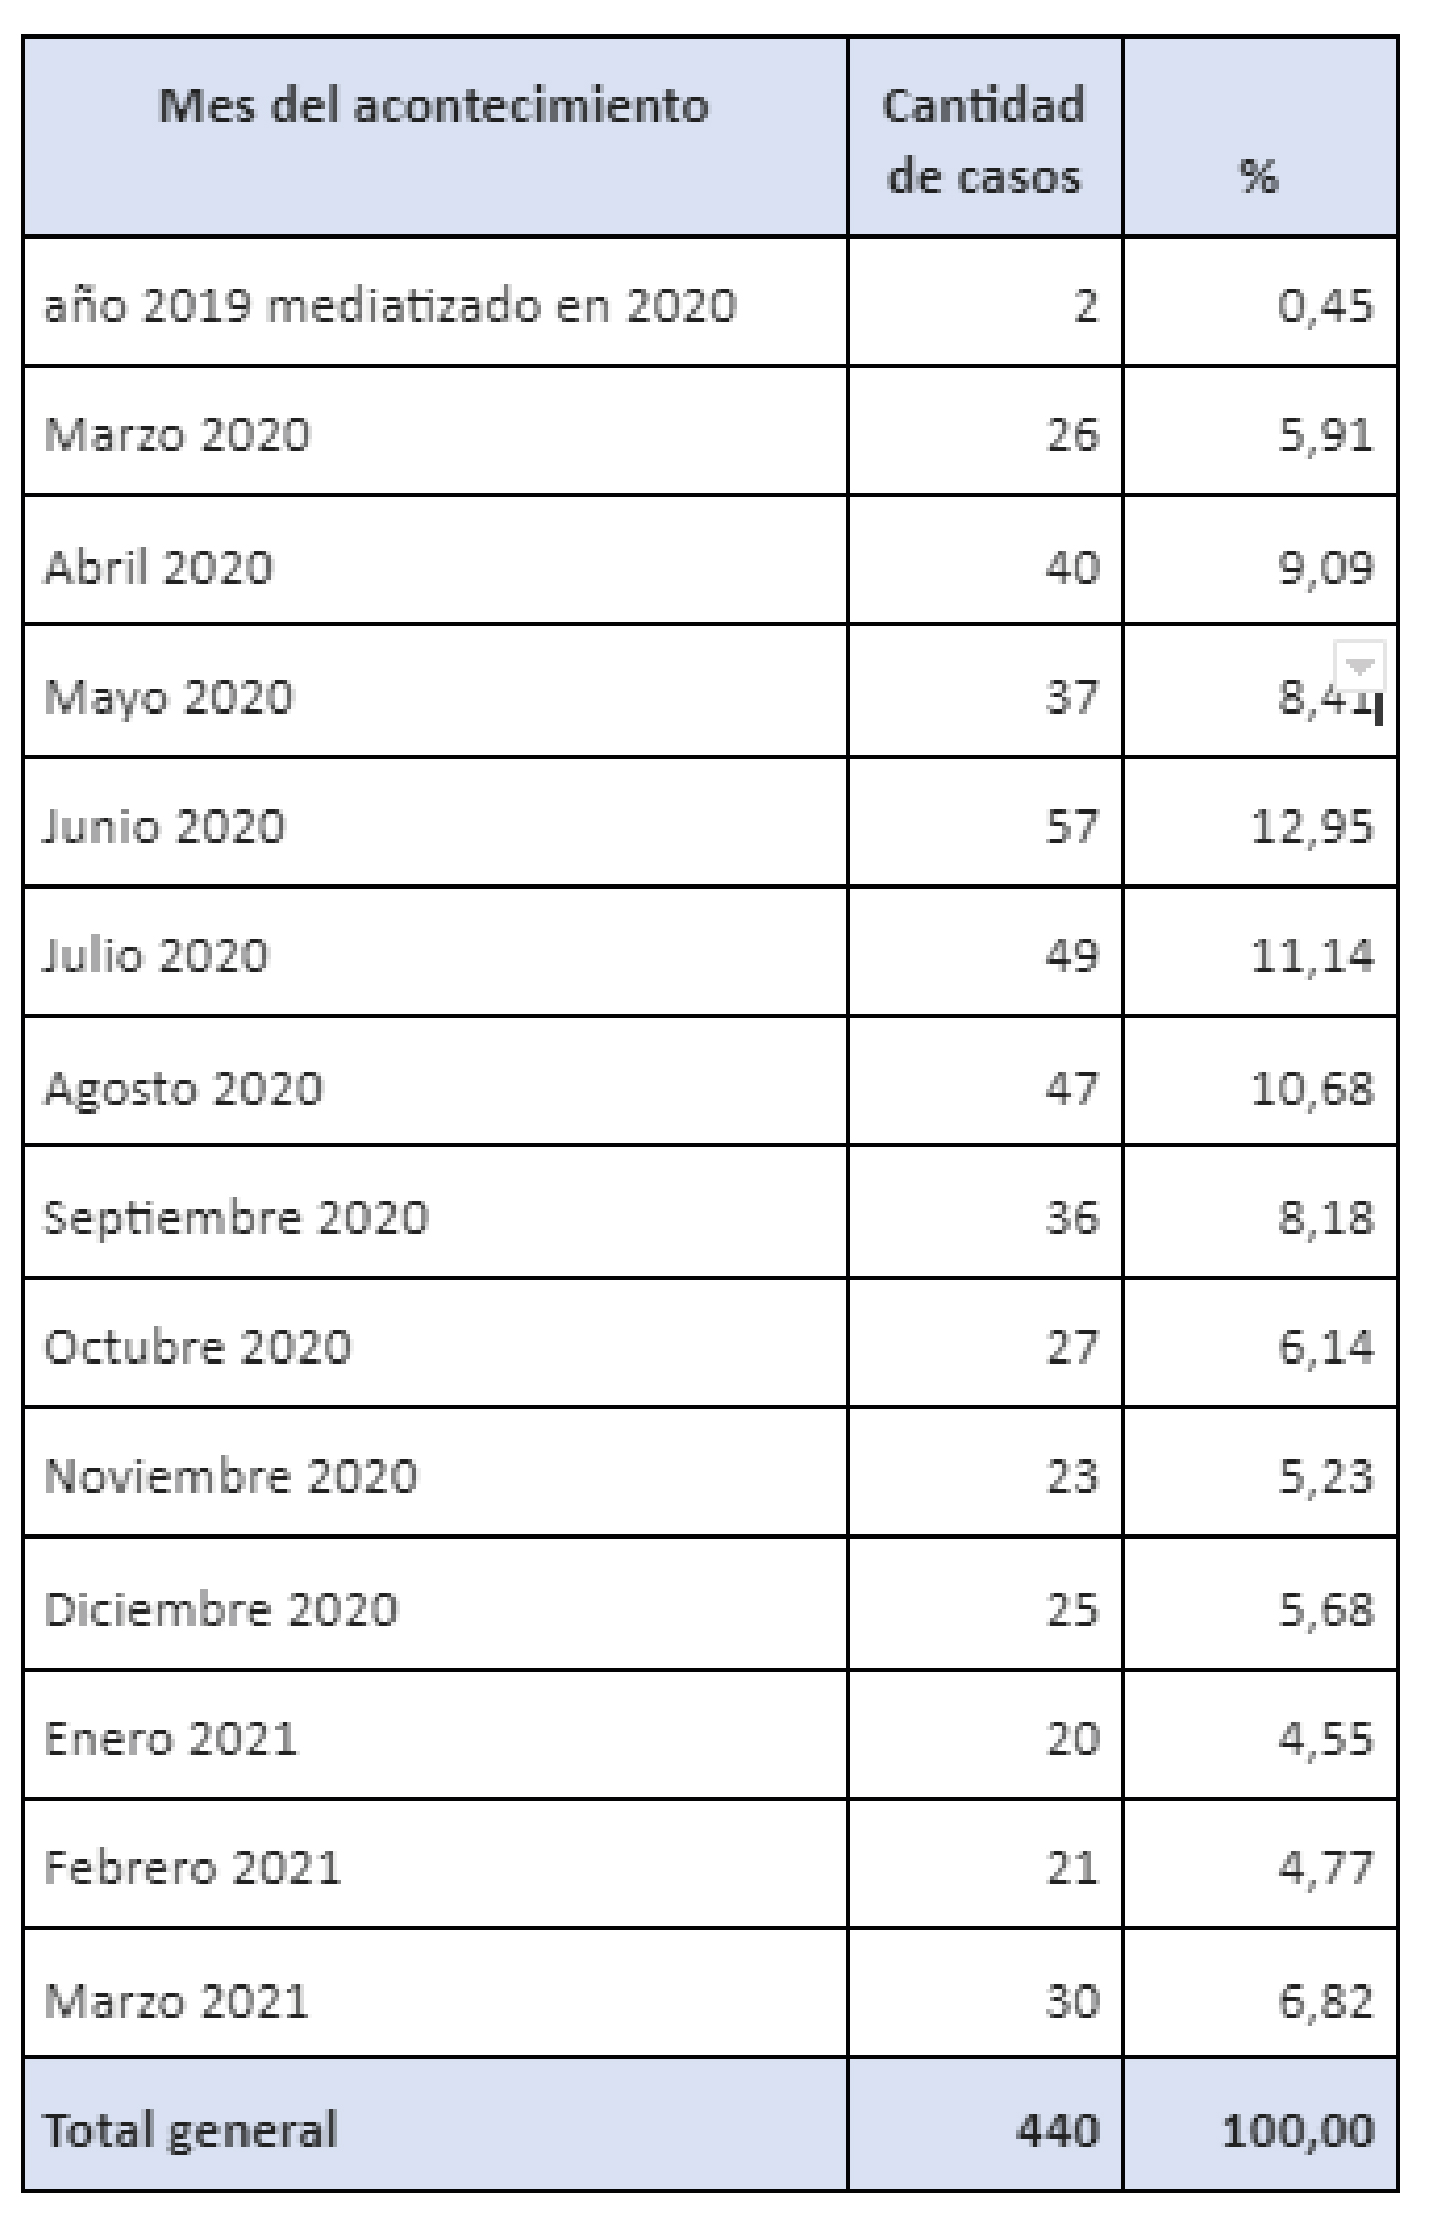  Casos de violencia policial mediatizados en Argentina desde el 20/03/2020 al 31/03/2021, por mes en que ocurrió el hecho. 